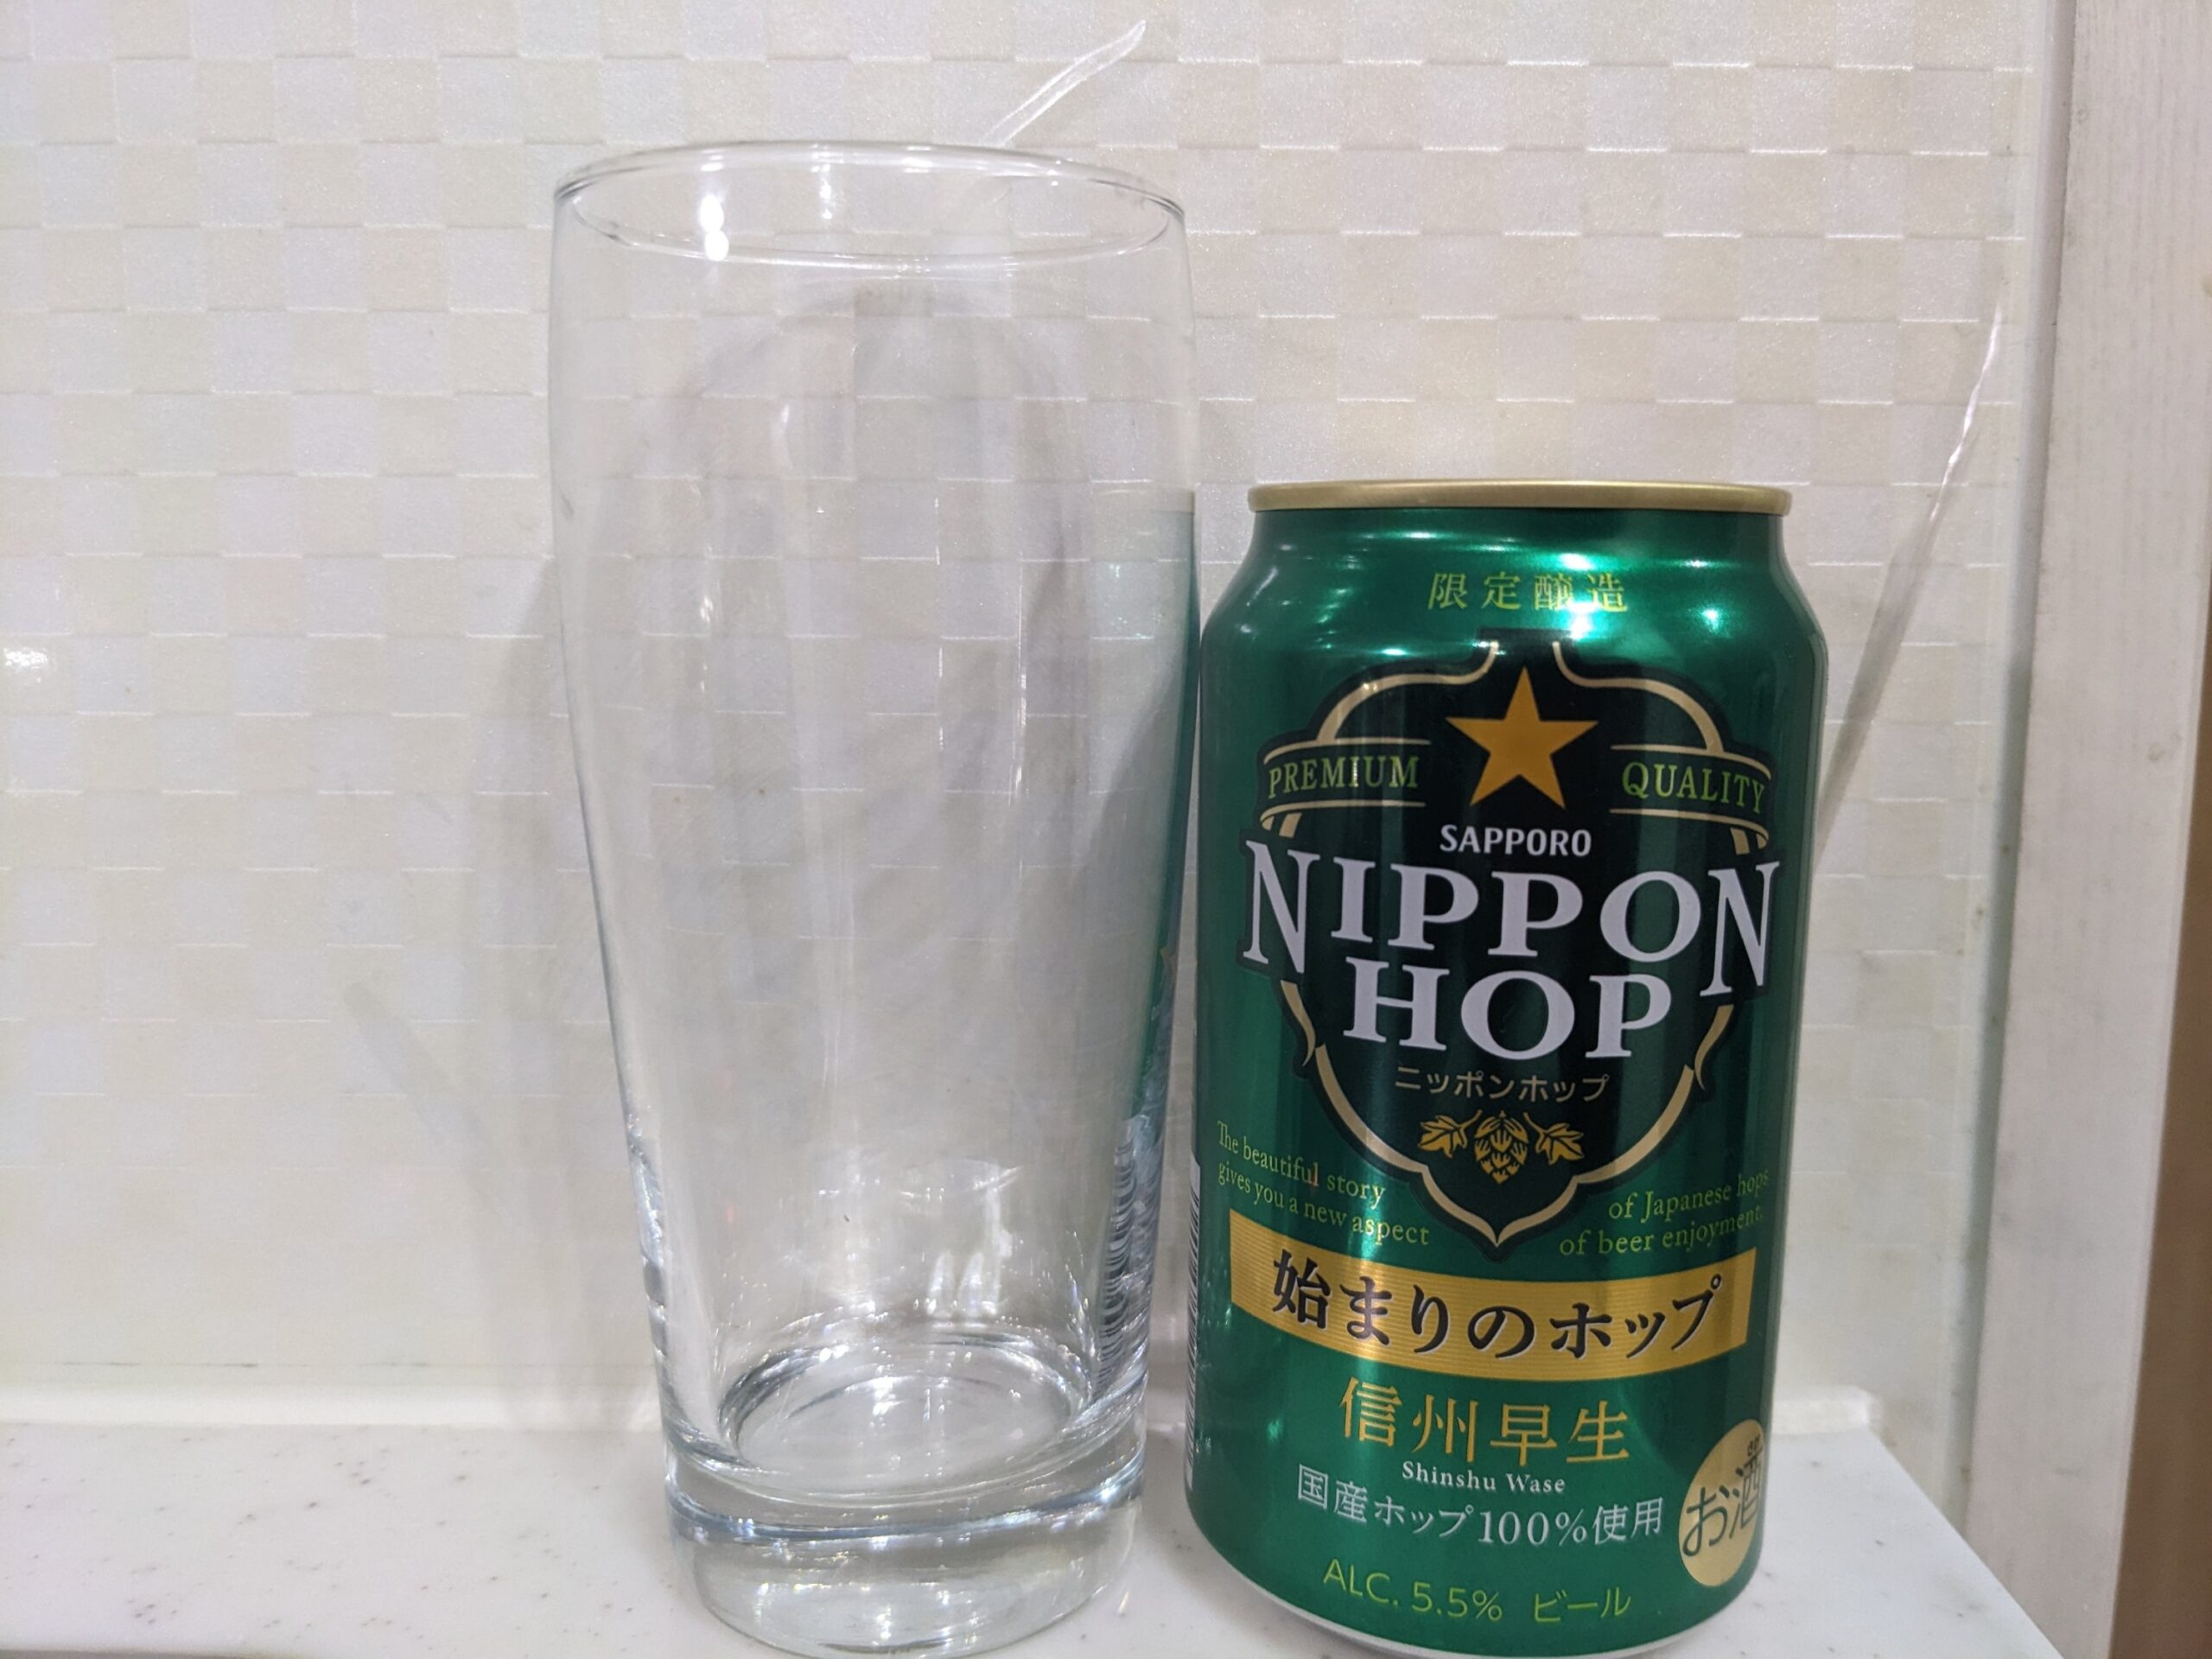 グラスと缶の「ニッポンホップ始まりのホップ信州早生」